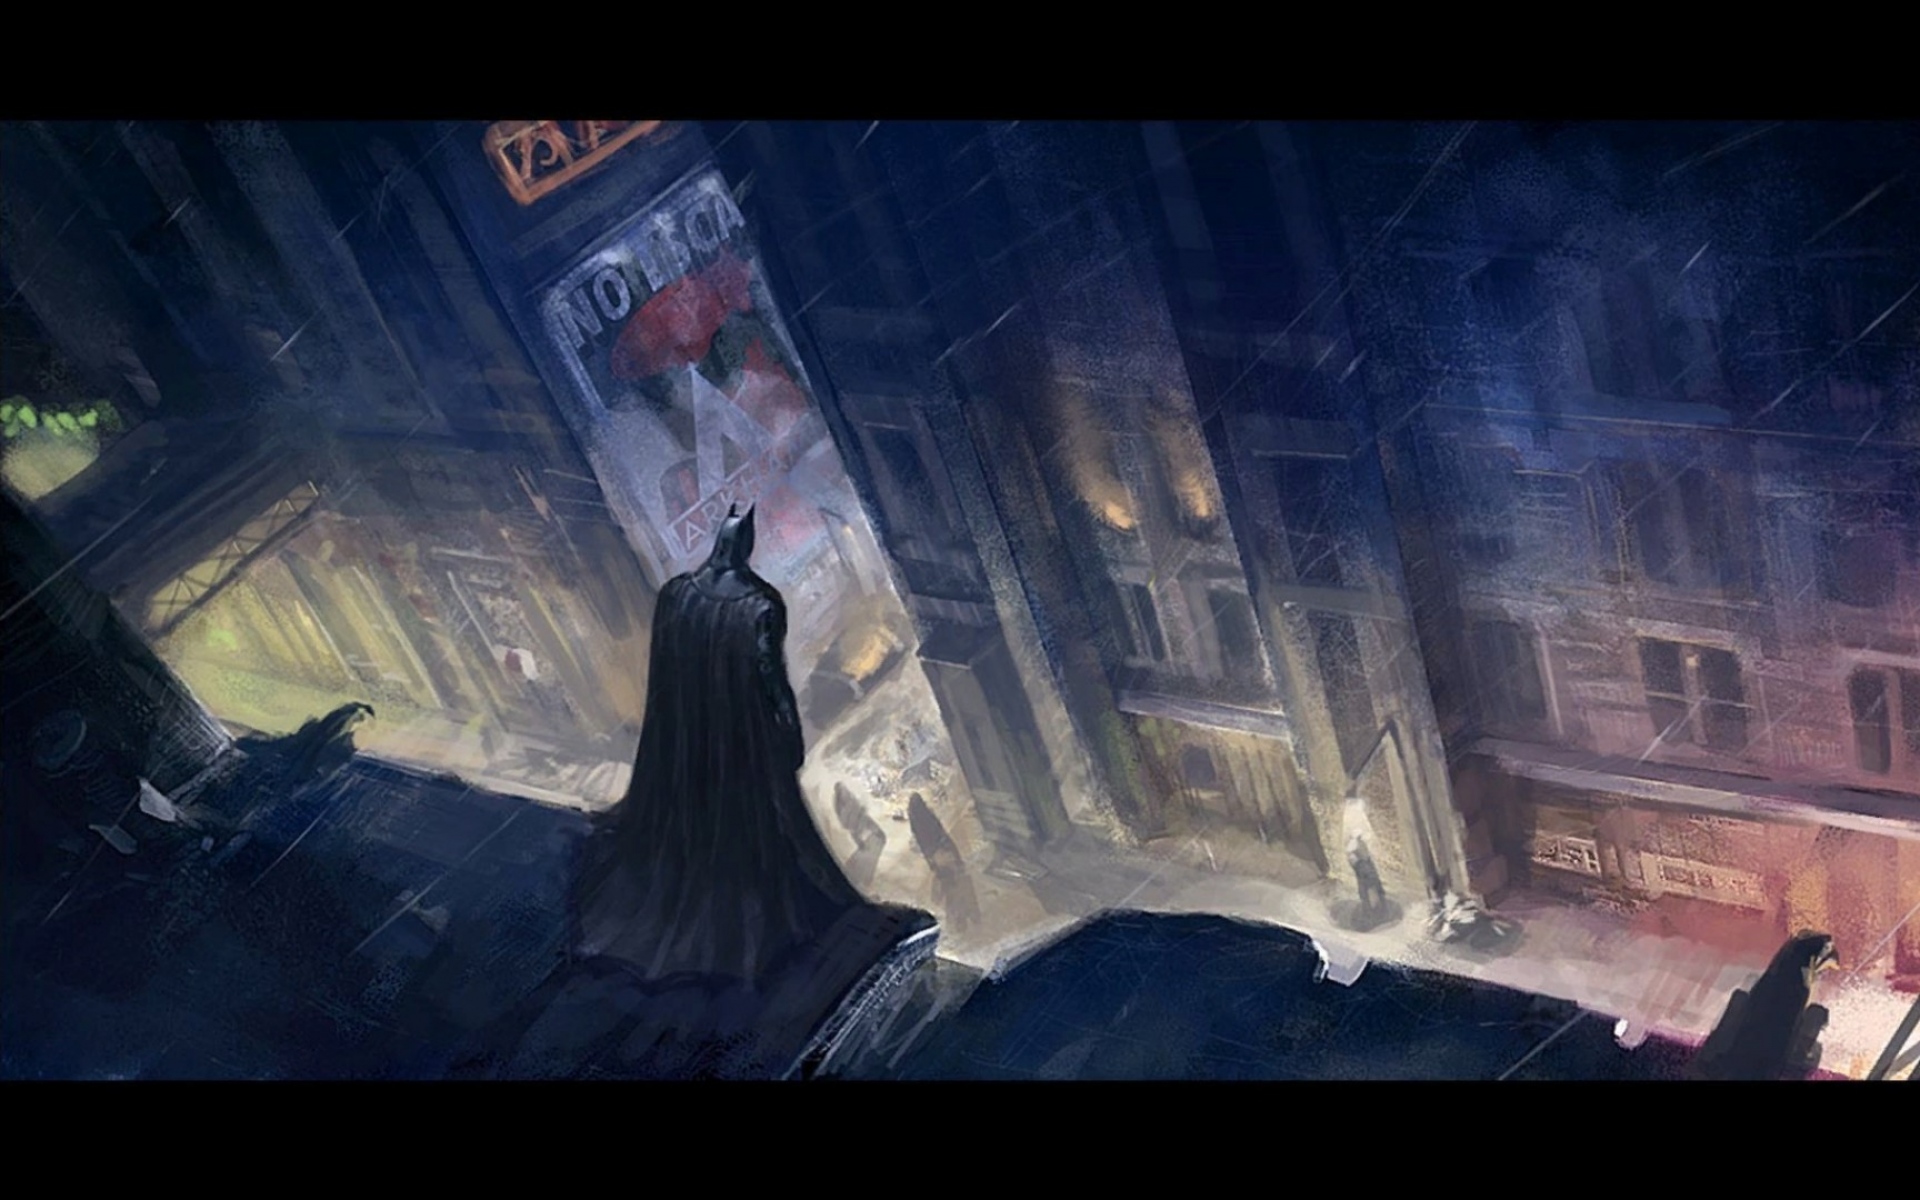 Картинки Бэтмен Аркхем город, фан-арт, картина, характер, город, улица, дождь фото и обои на рабочий стол